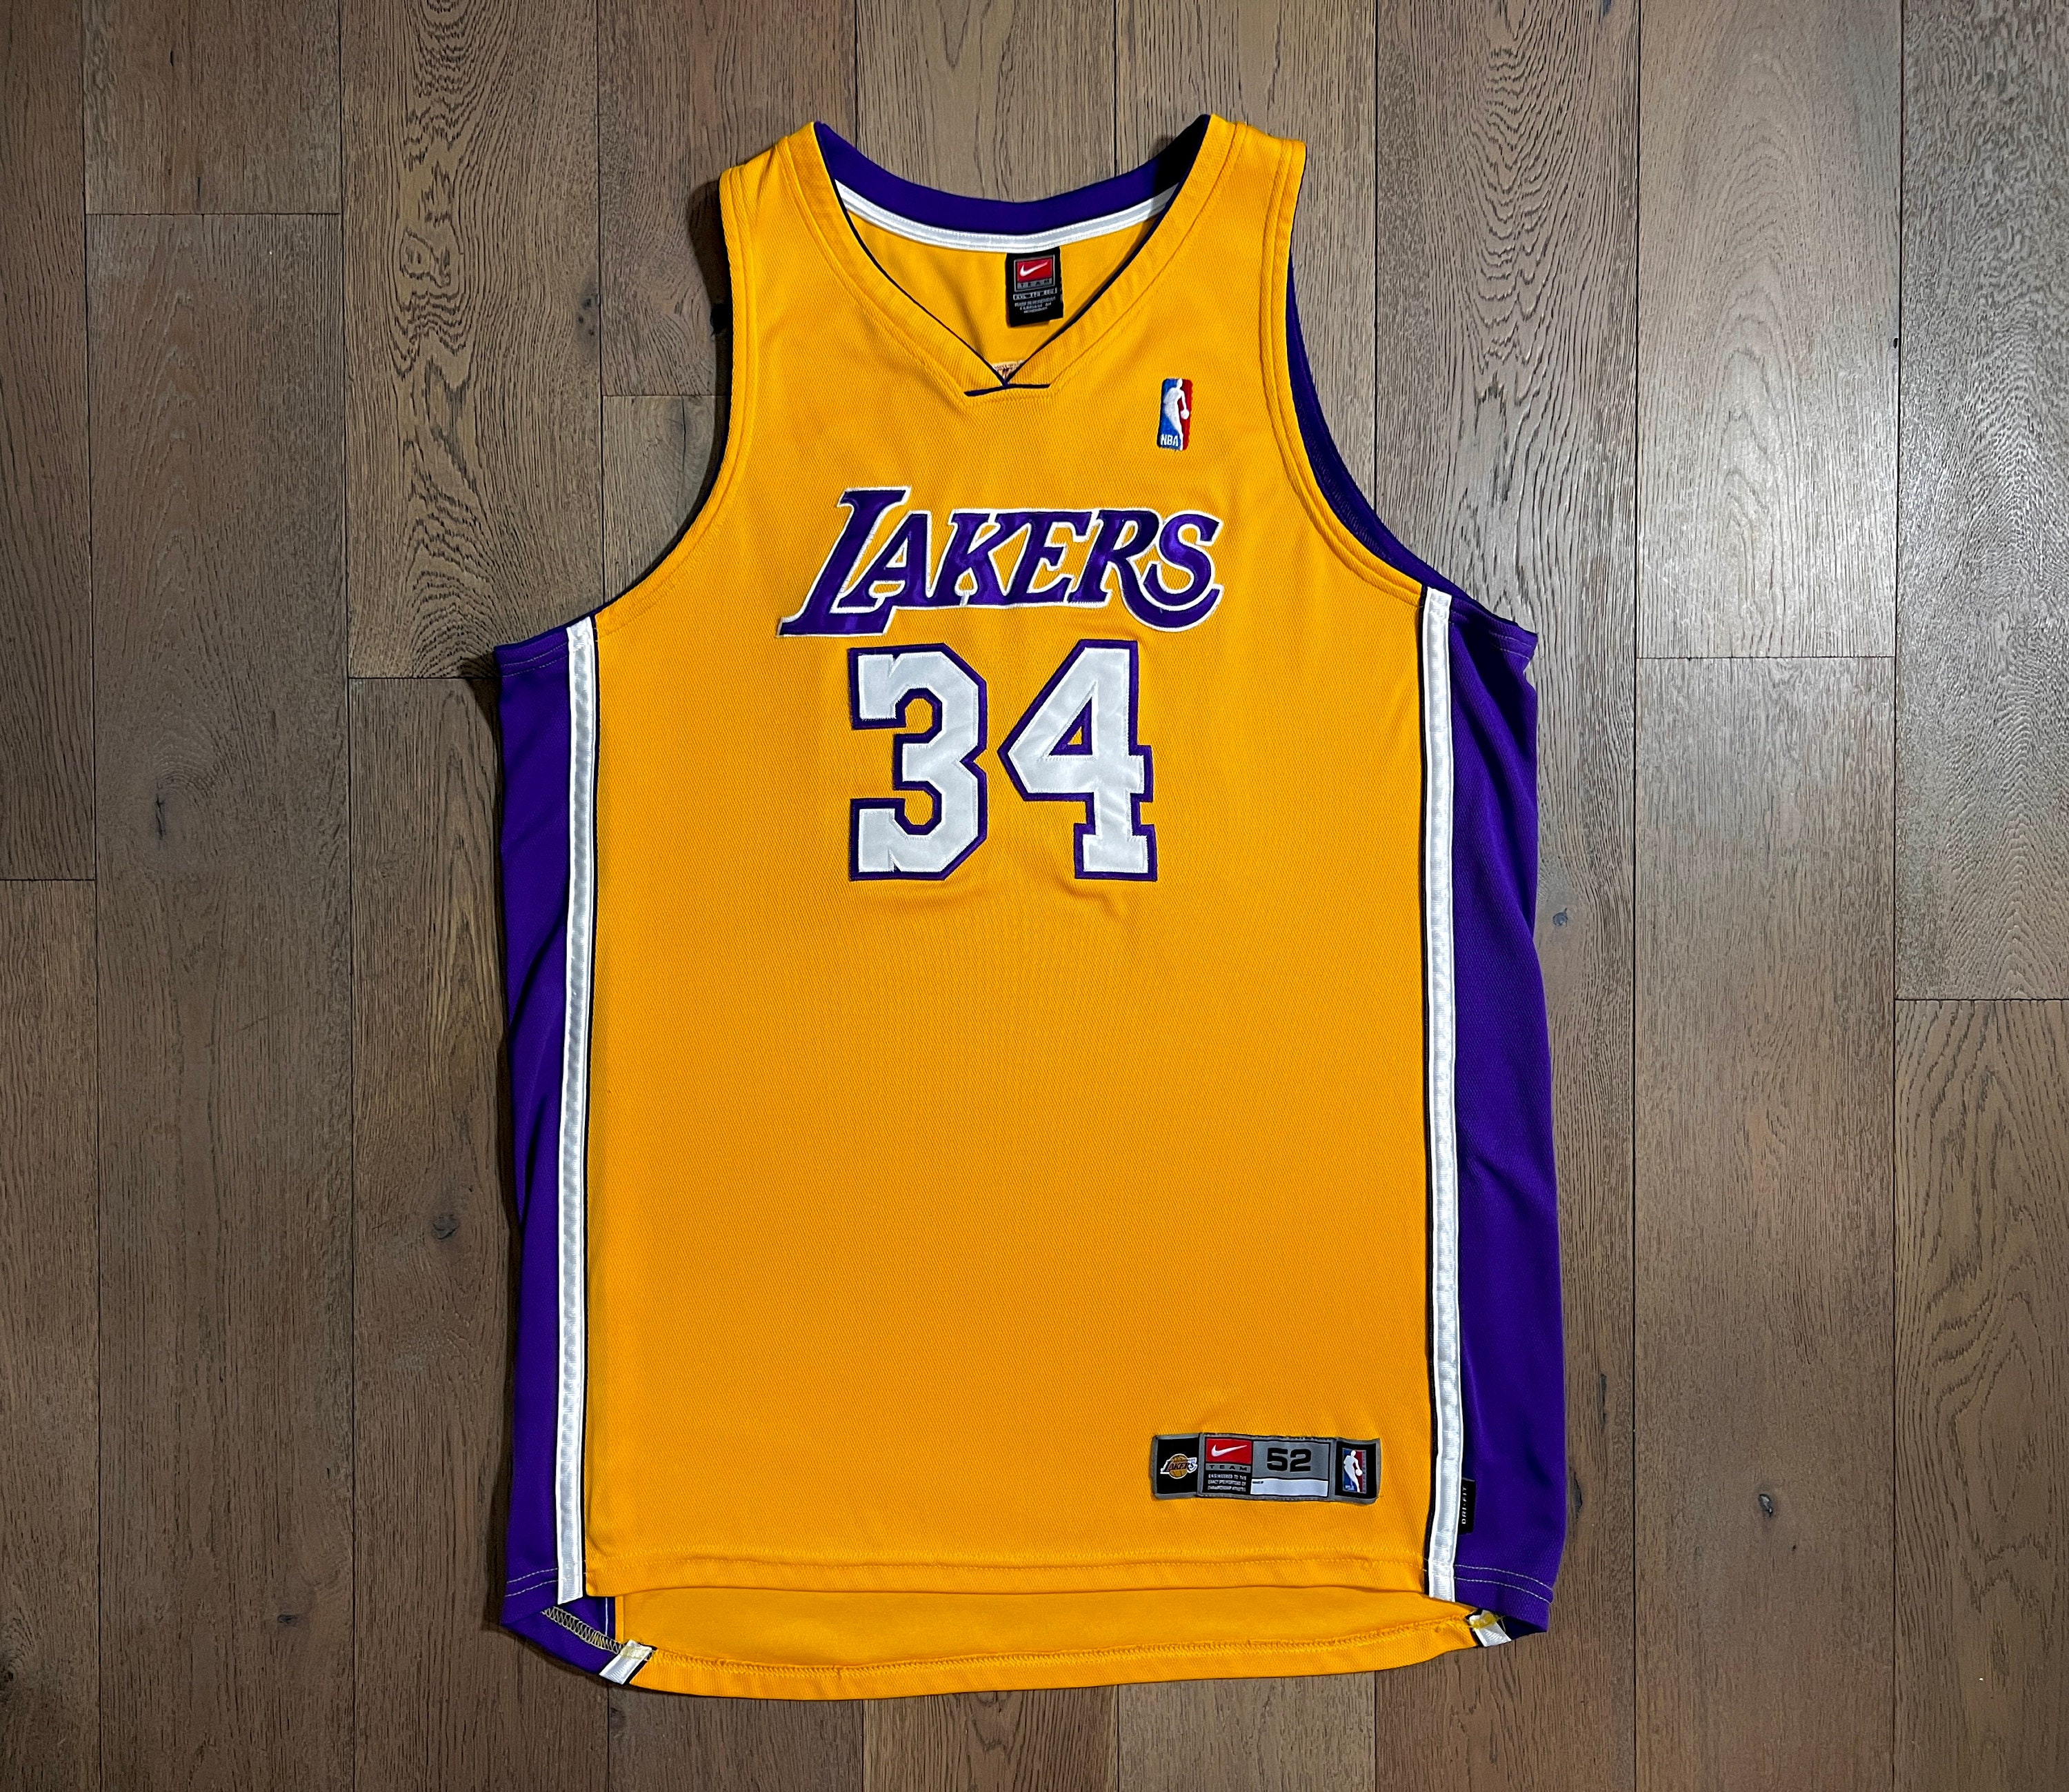 Nike LeBron James-LA Lakers,Women's,Large,Stitched,Black,Purple,Yellow, Jersey